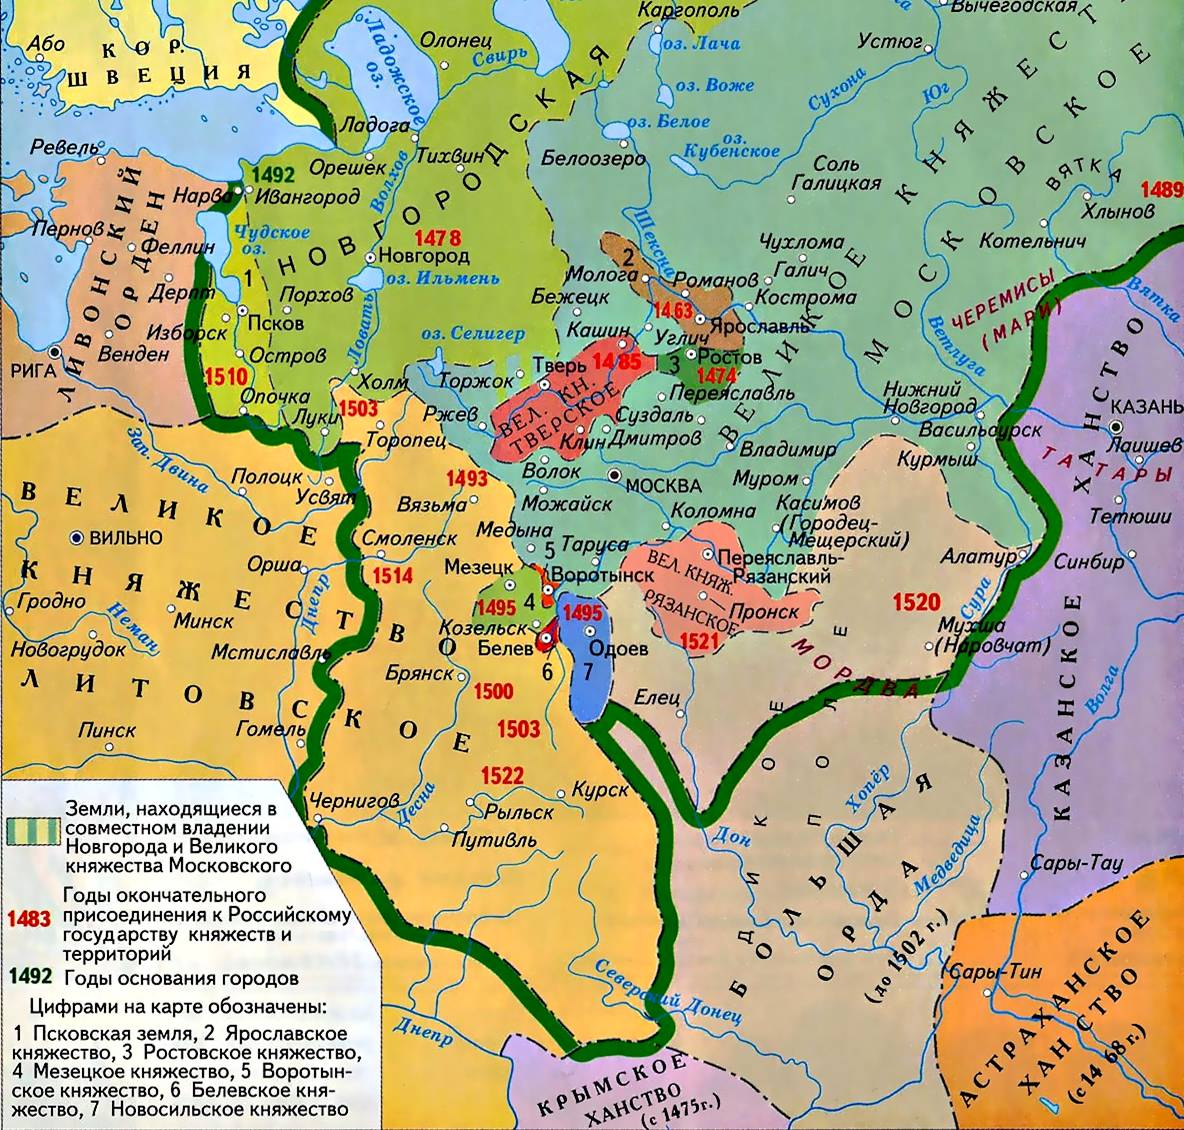 Карта Руси на XV в., изображены года присоединения земель к Москве